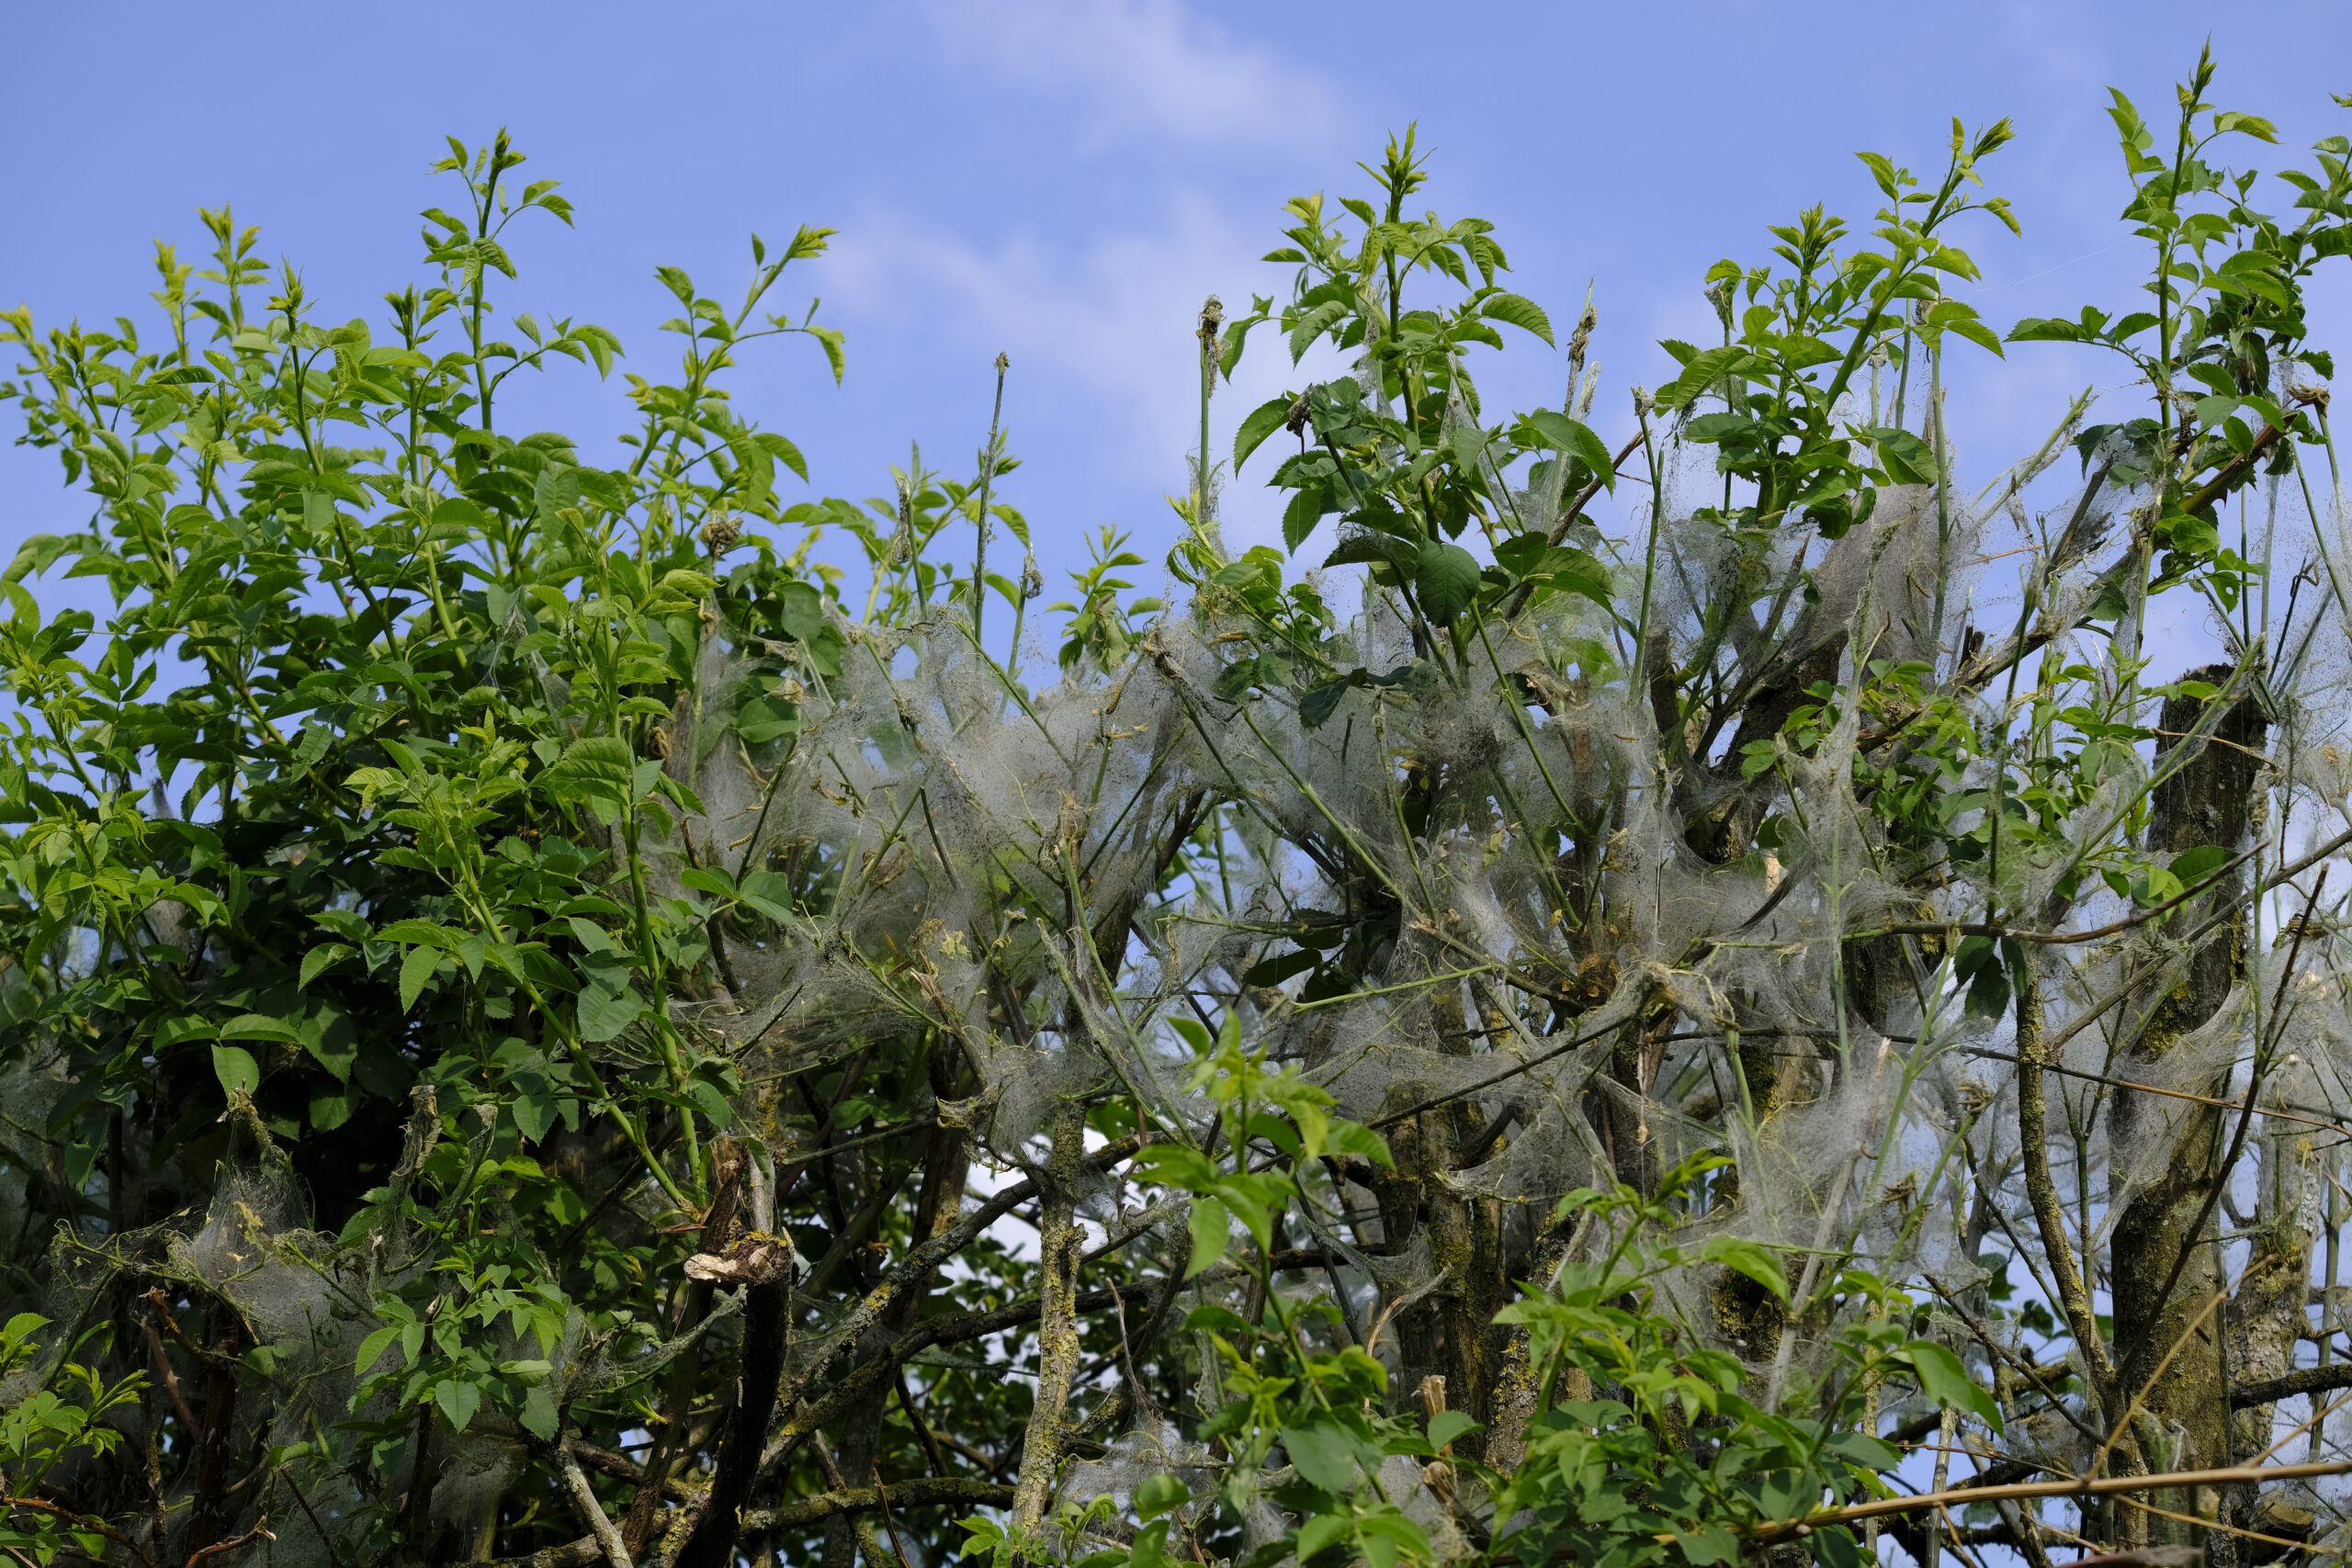 Gespinste in den Zweigen eines Buschs, ähnlich Spinnweben-Haufen.